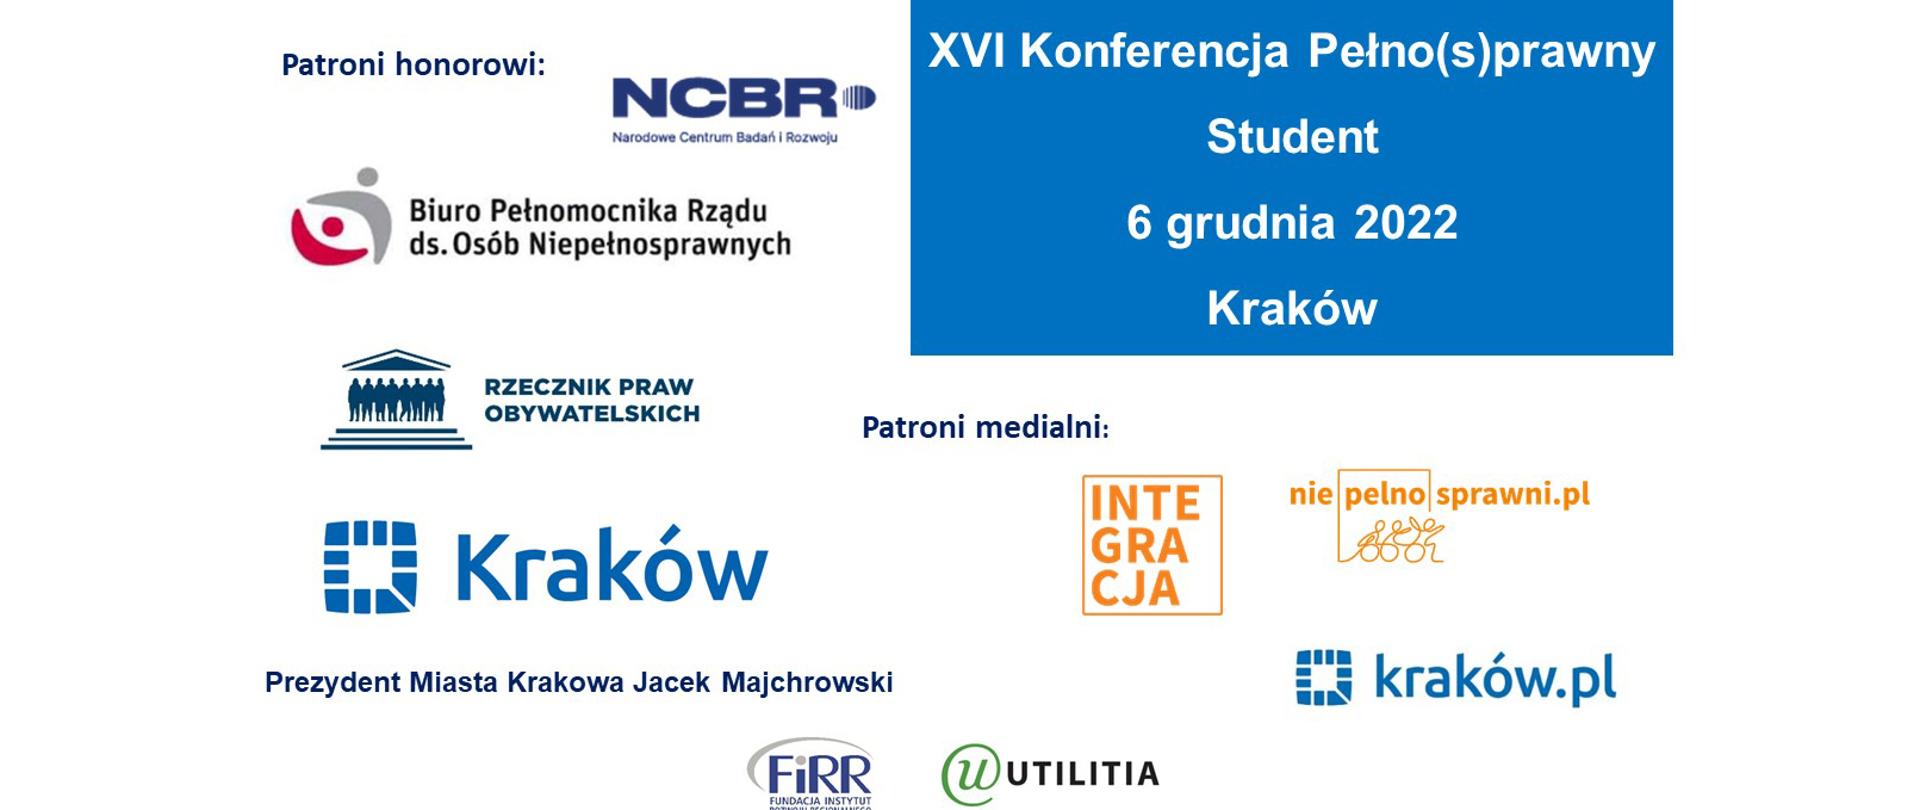 Konferencja „Pełno(s)prawny Student” pod patronatem honorowym NCBR